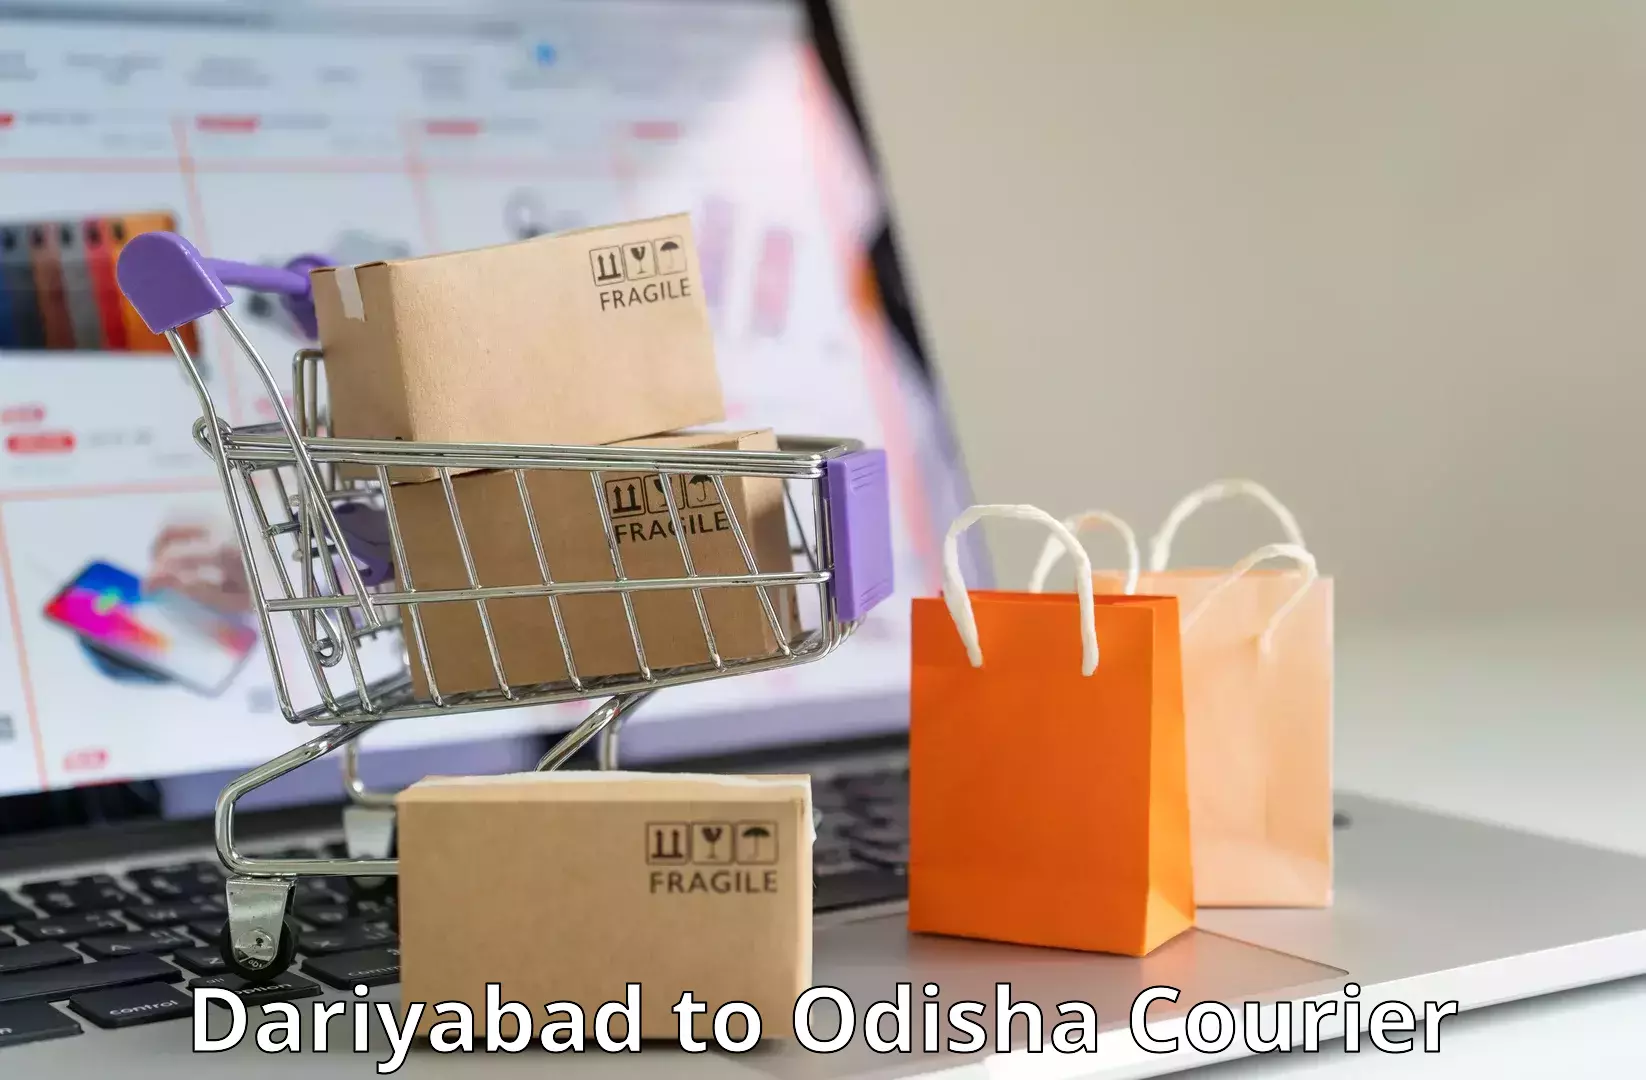 High-capacity shipping options Dariyabad to Bamra